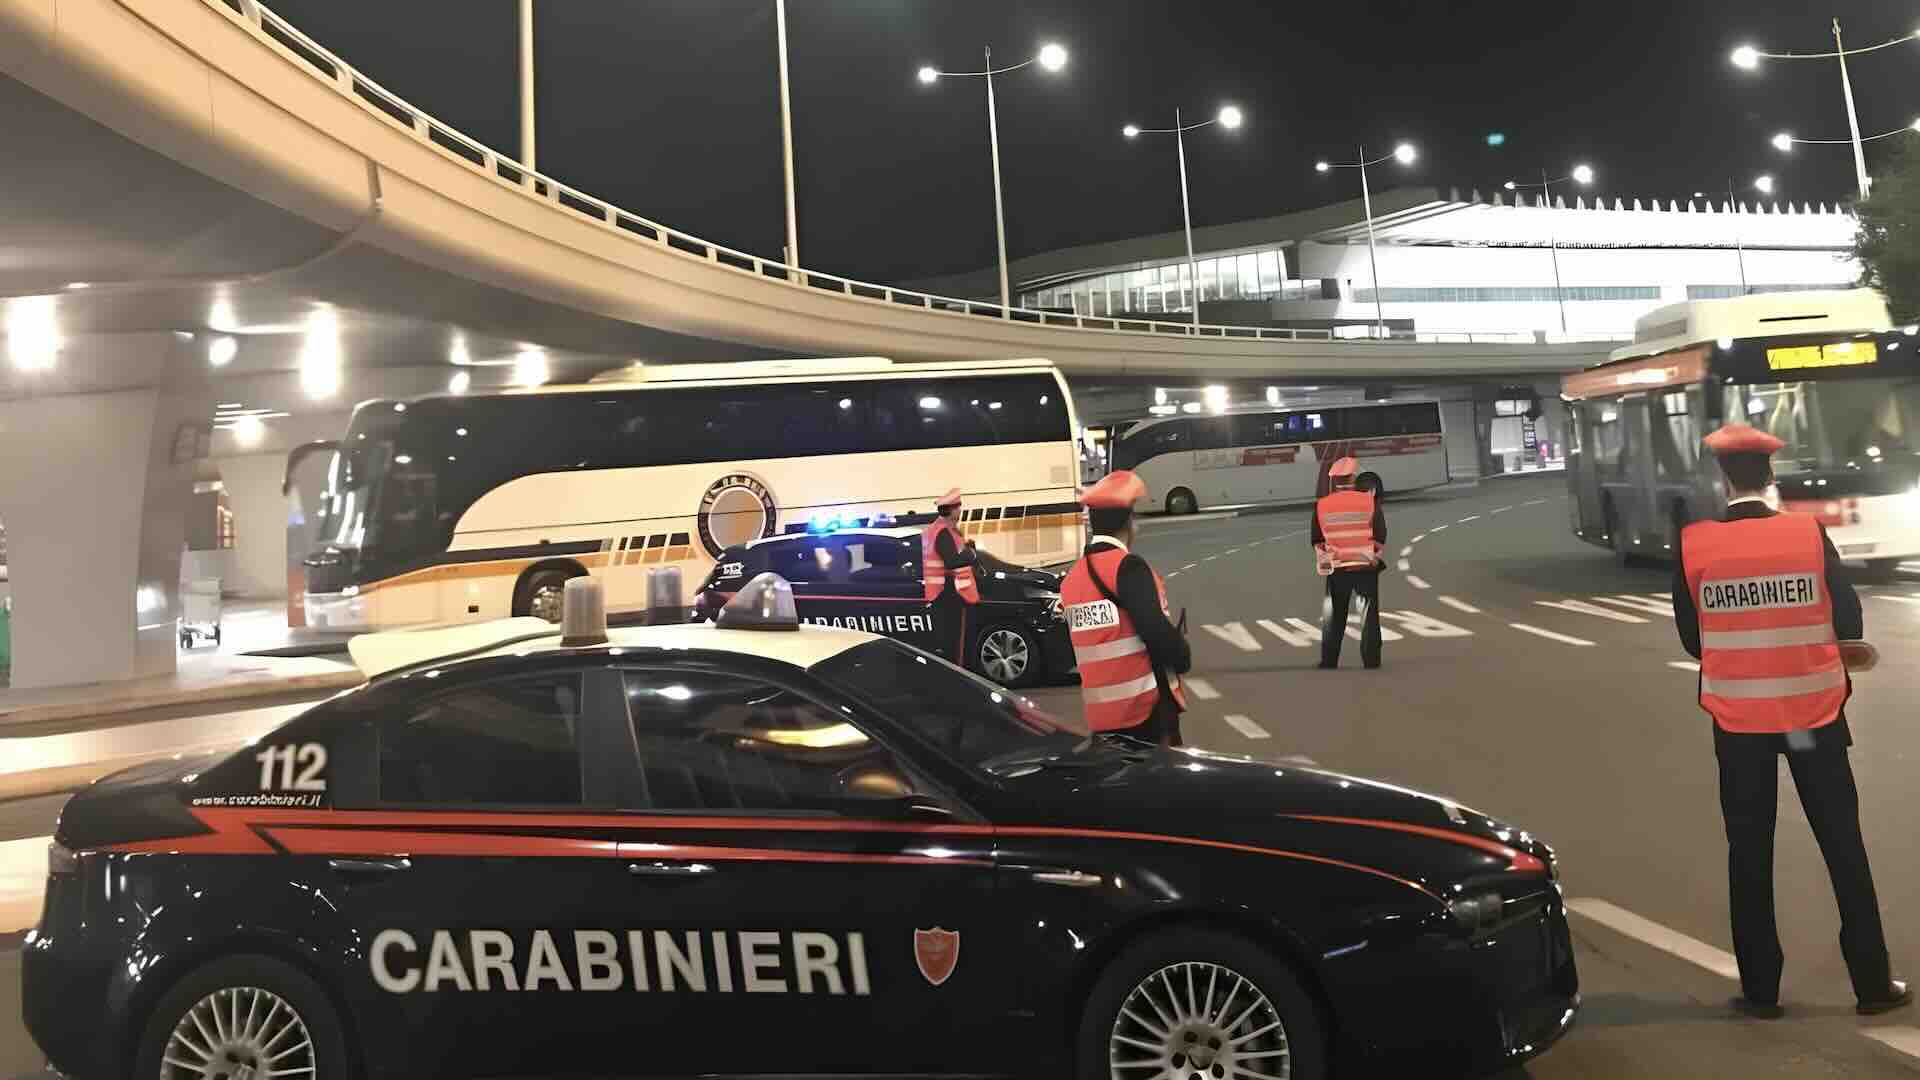 Aeroporto di Roma Fiumicino tassisti Ncc abusivi e furti al duty free: controlli dei carabinieri, multe e denunce